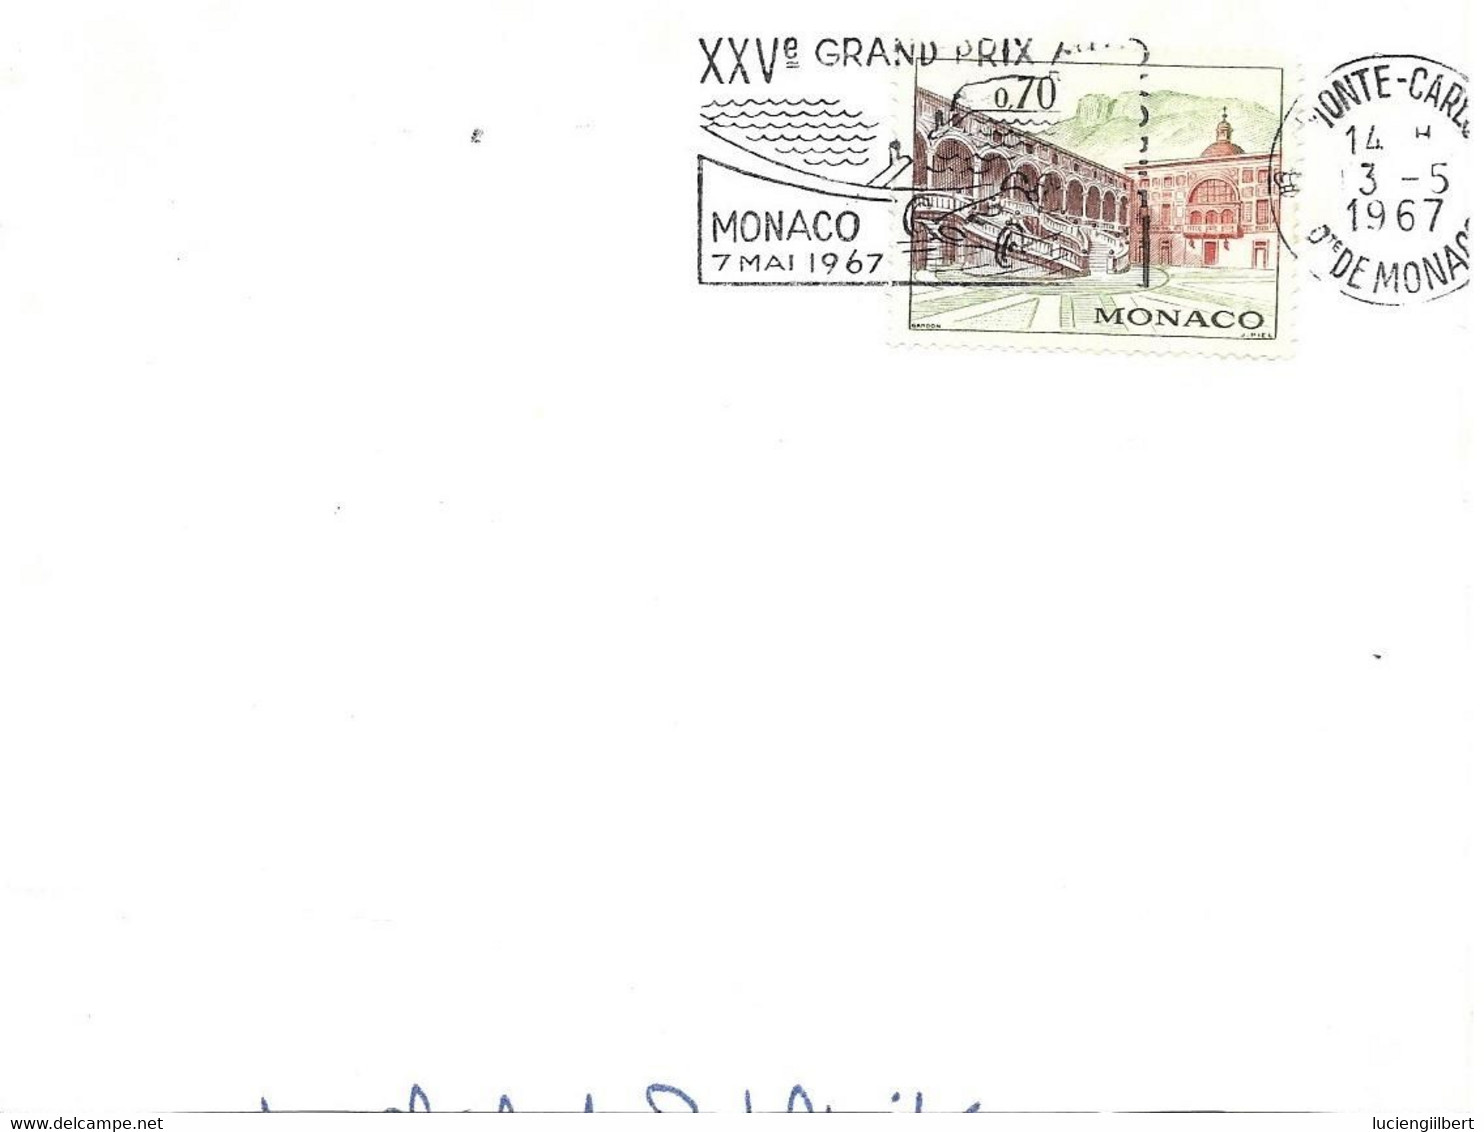 MONACO  - TIMBRE N° 665  - FLAMME :   XXVe GRAND PRIX DE MONACO 7 MAI 1967 -  SEUL SUR LETTRE - BELLE FRAPPE - Covers & Documents